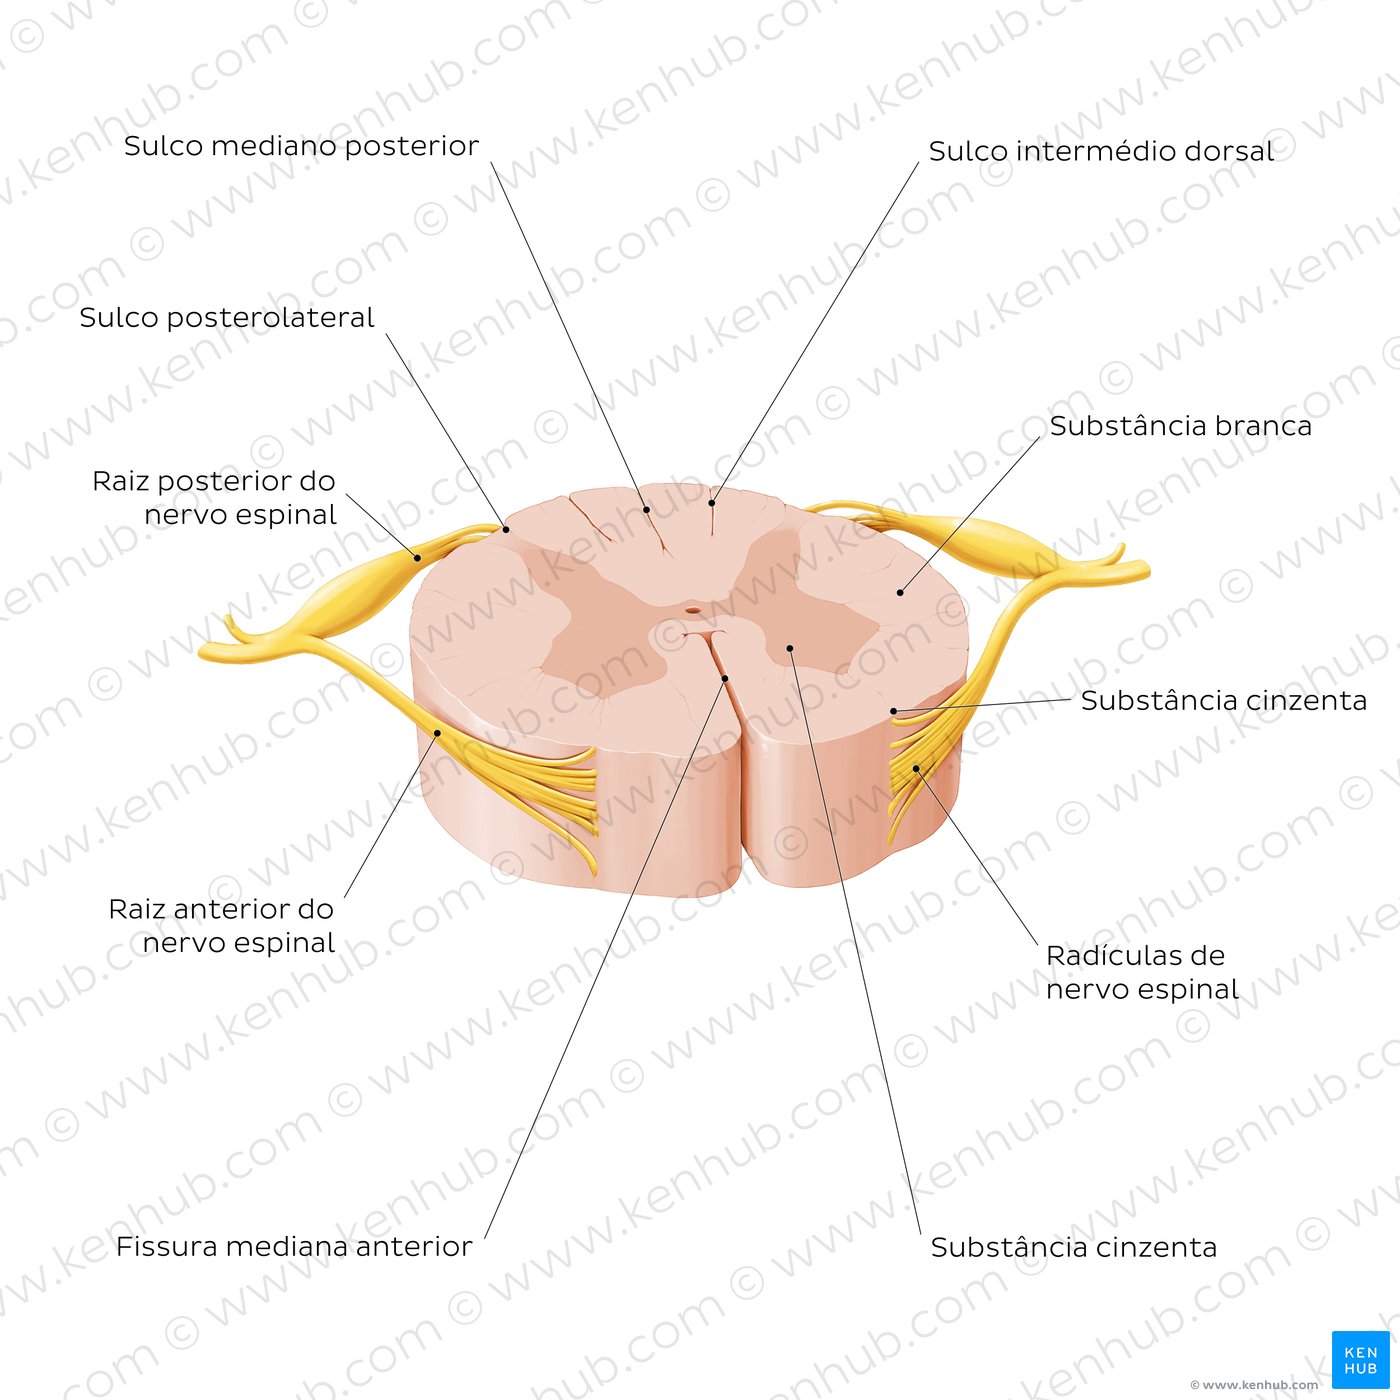 Superfície externa da medula espinal